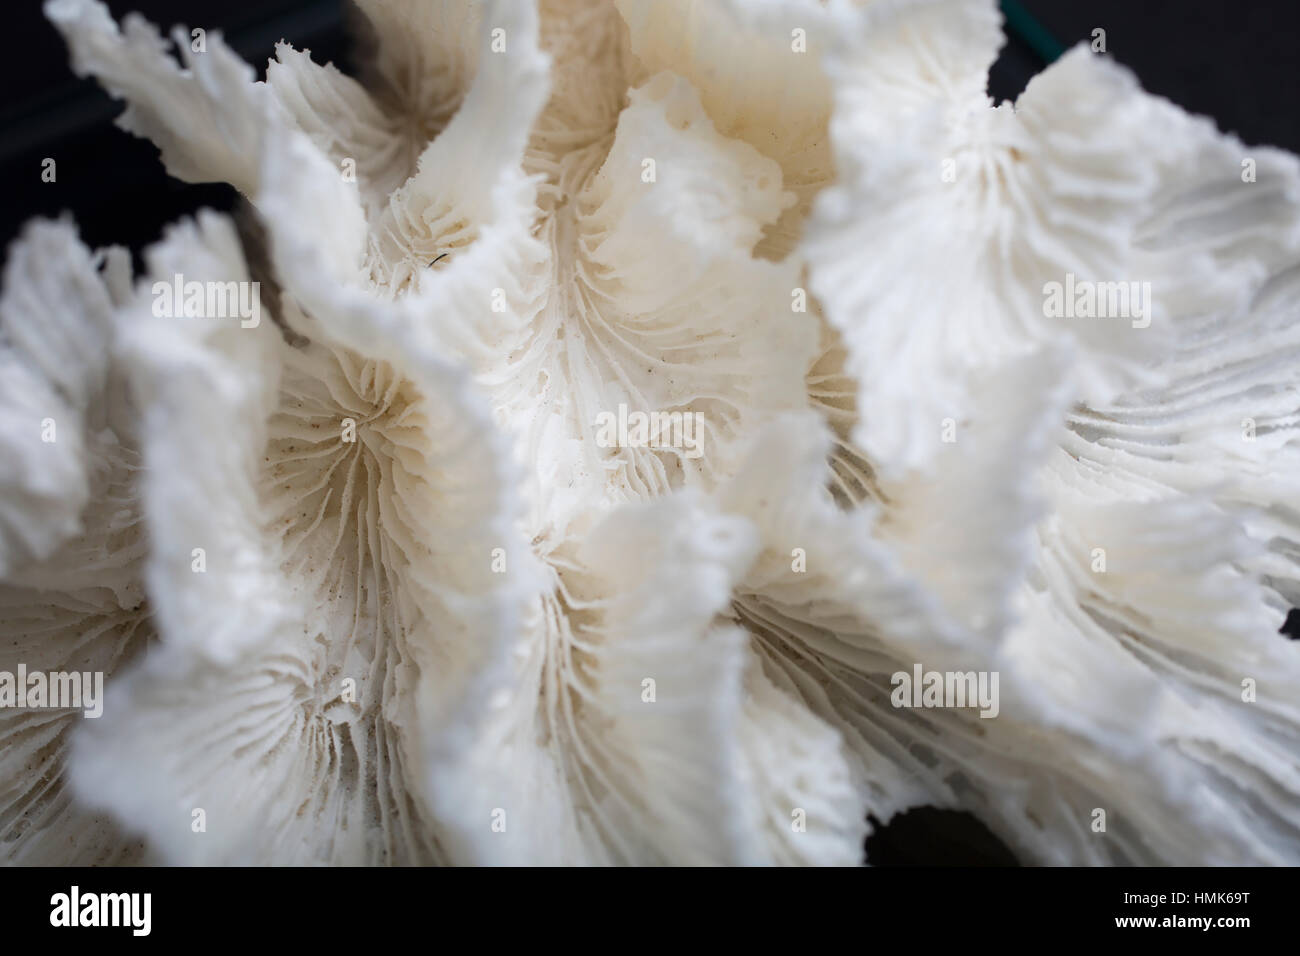 Corallo bianco su sfondo nero studio shot close up macro dettaglio Foto Stock